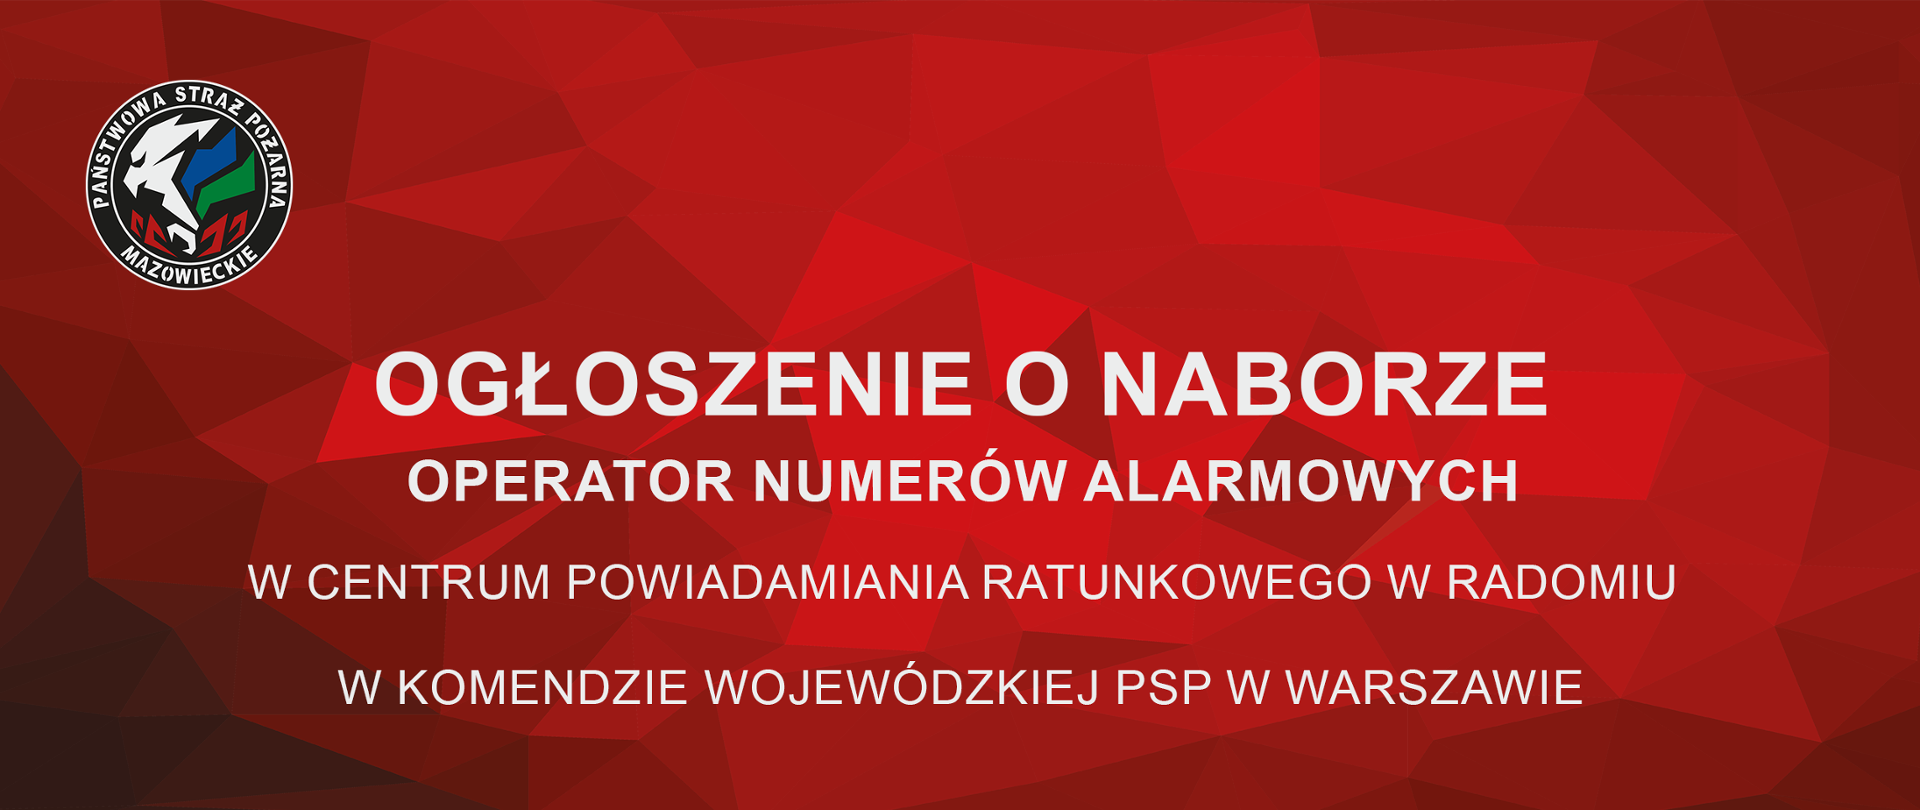 Ogłoszenie o naborze na stanowisko "Operator numerów Alarmowych" w Centrum Powiadamiania Ratunkowego w Radomiu, w Komendzie Wojewódzkiej PSP w Warszawie